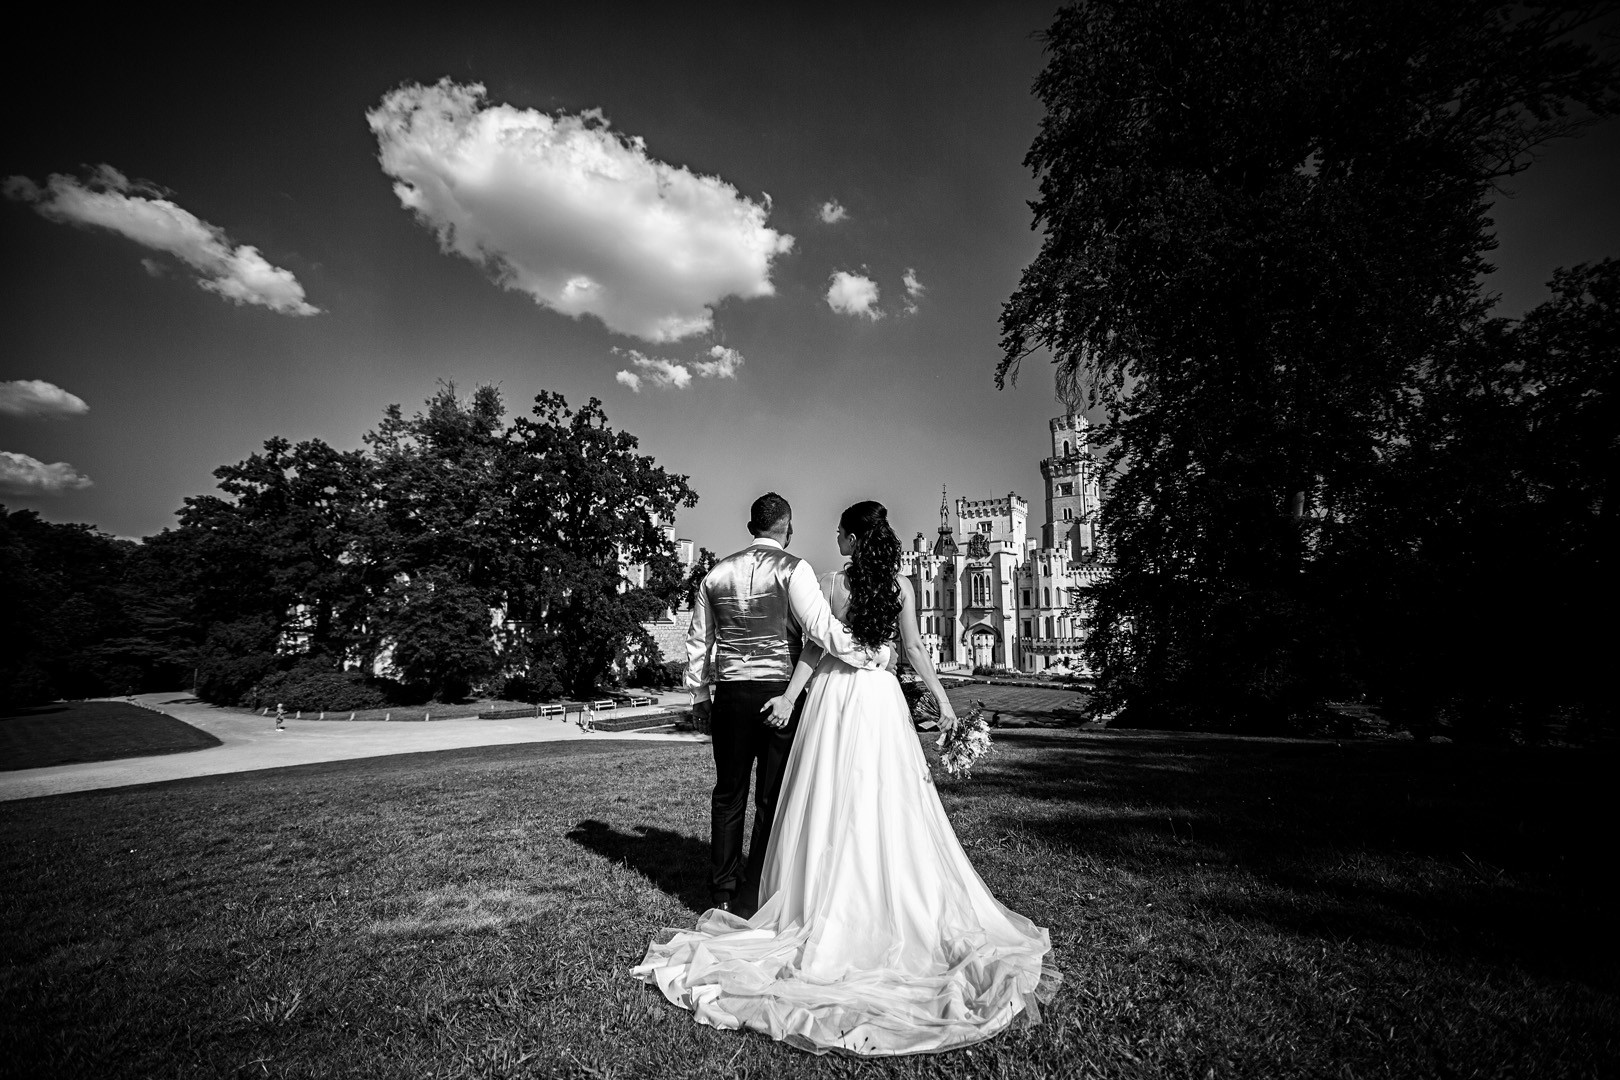 Picturesque dream wedding of Kloudy & Michal in Hluboká nad Vltavou. - 0497.jpg